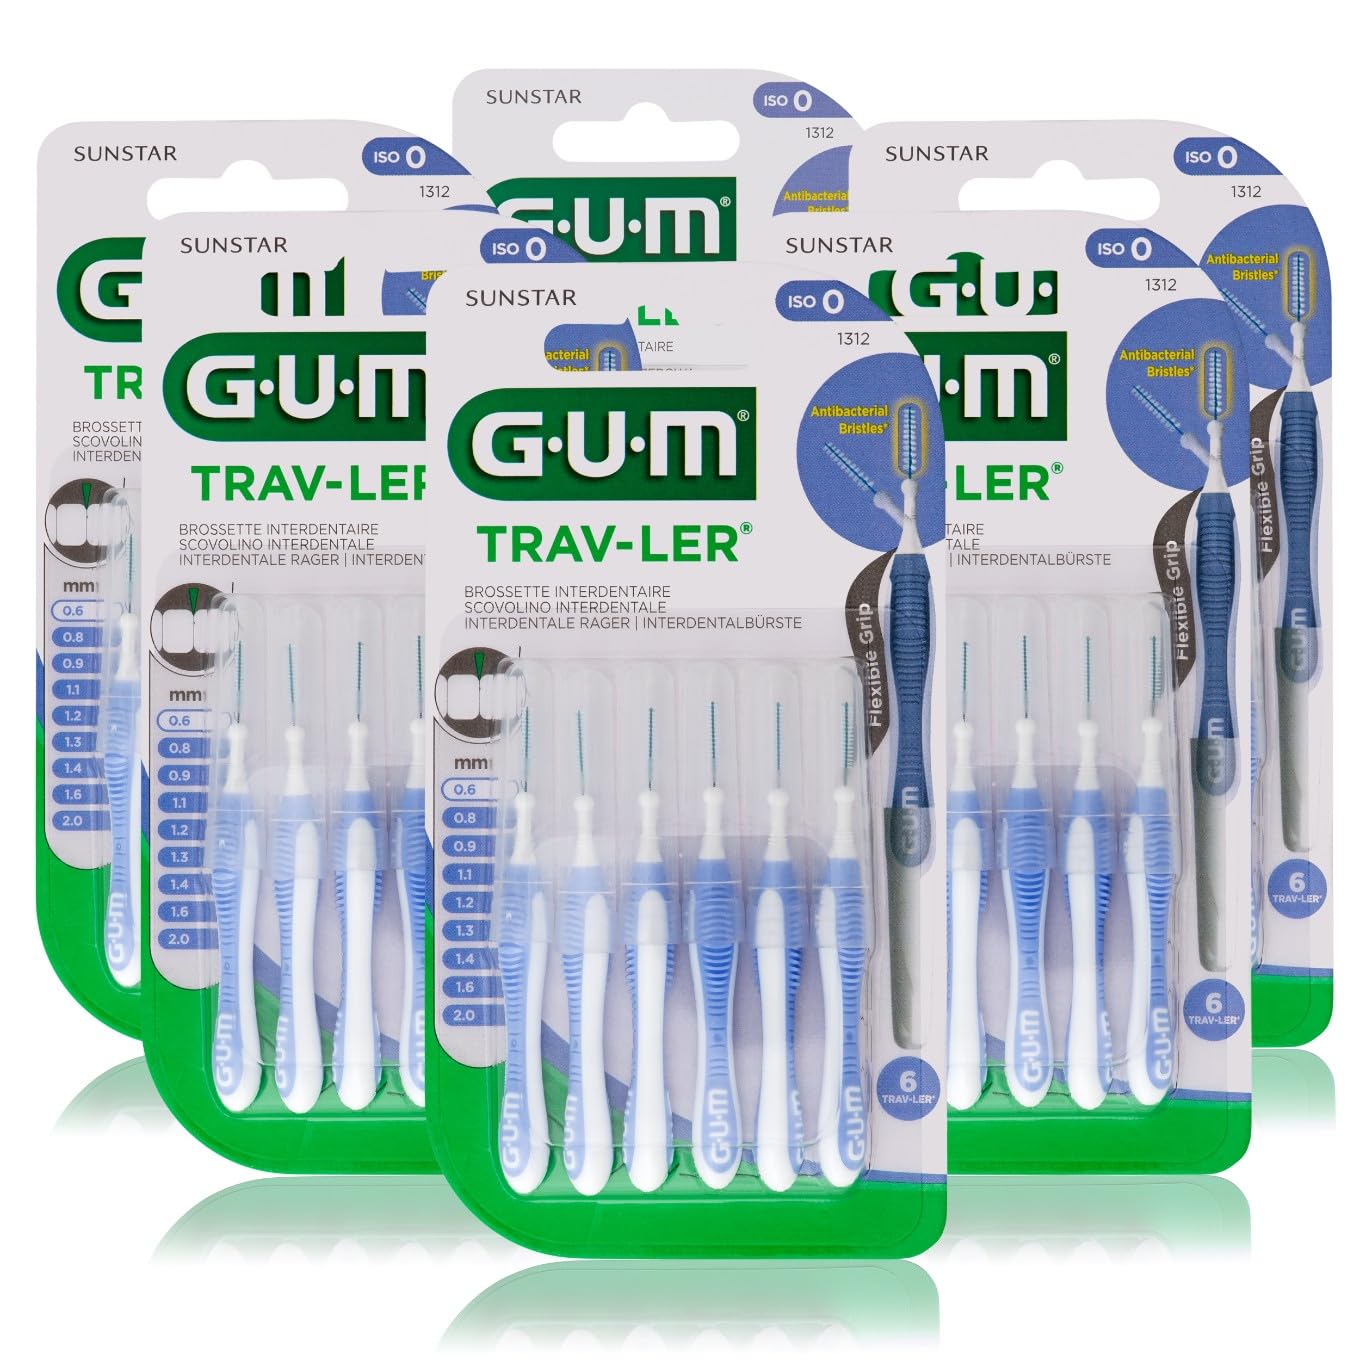 GUM TRAV-LER Interdentalbürsten/Für eine gründliche Reinigung aller Zahnzwischenräume (0.6mm)